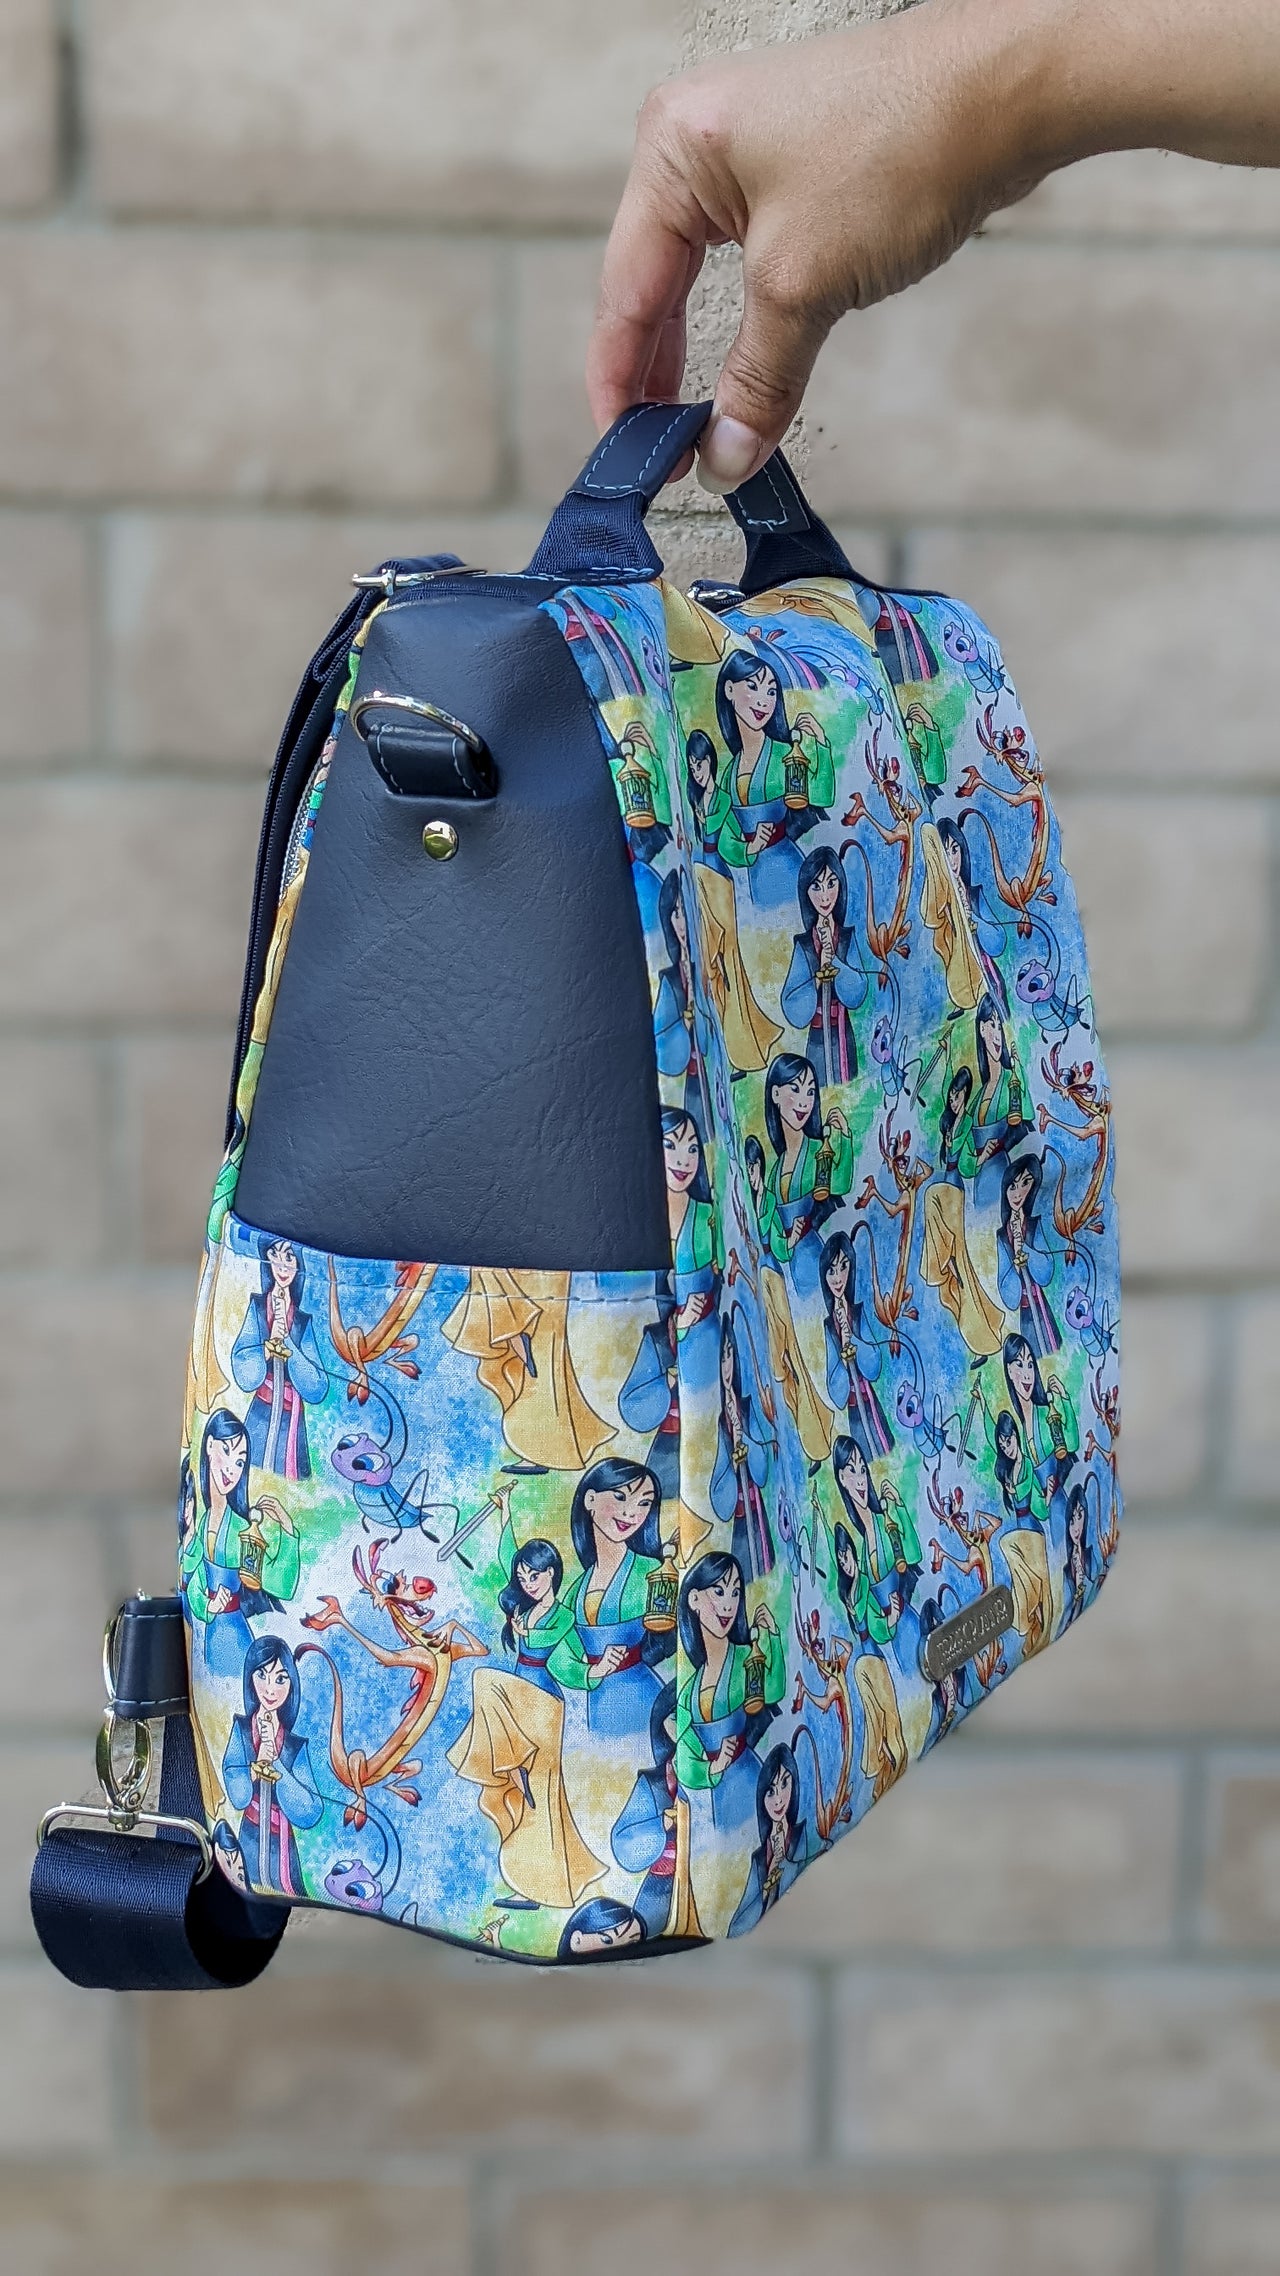 Mulan Convertible Backpack